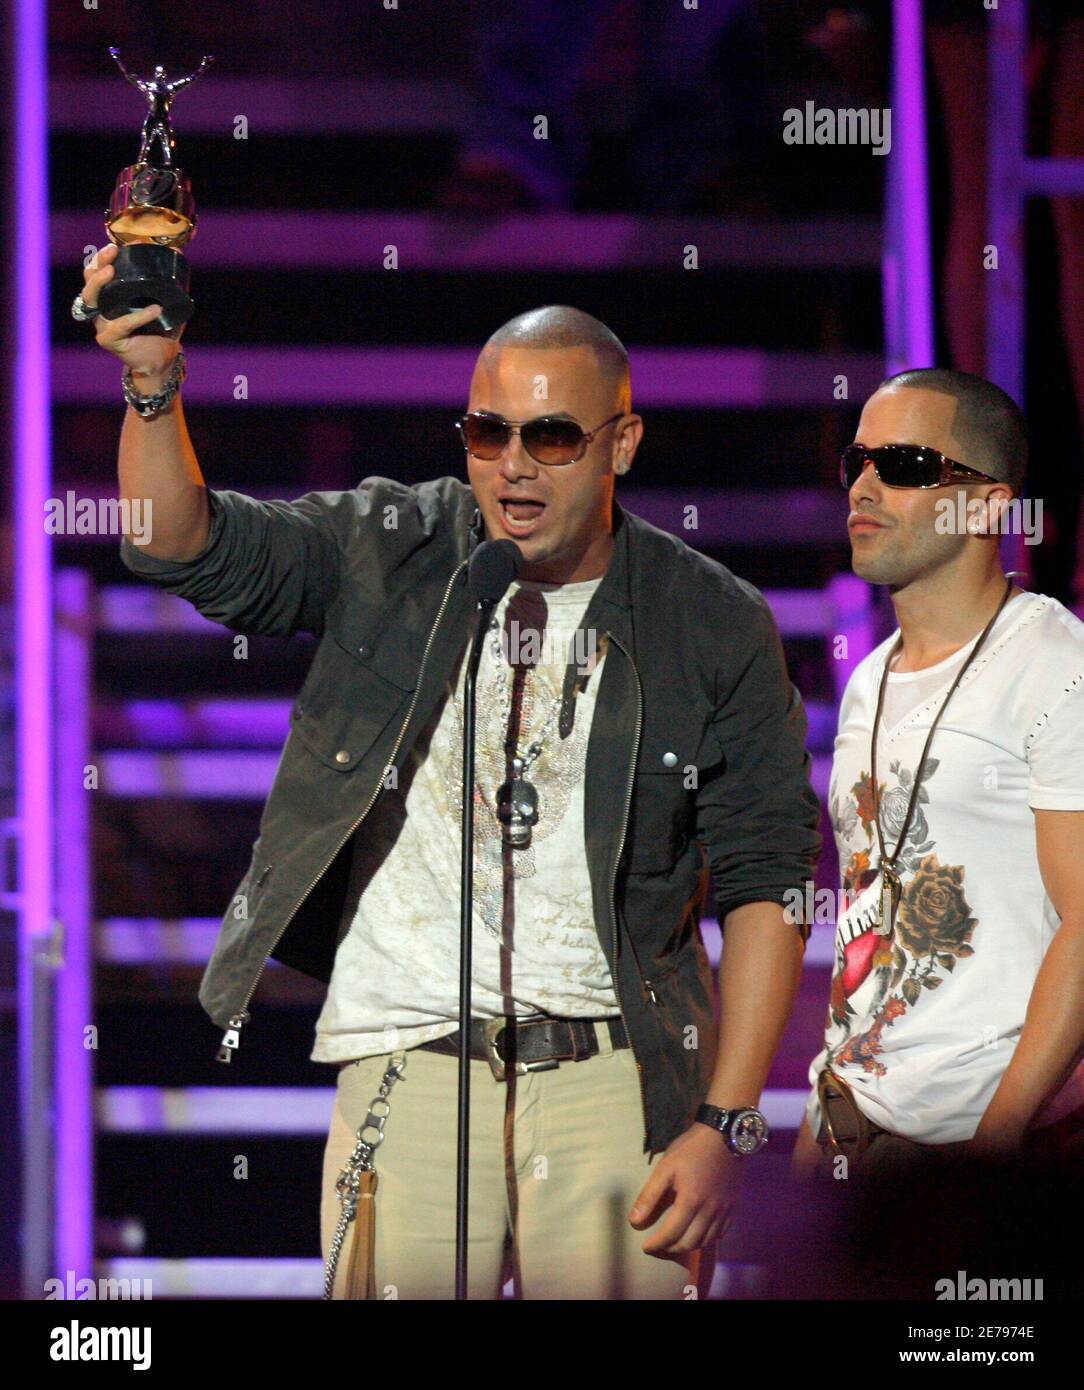 Artistas de grabación Wisin y Yandel (L) de Puerto Rico reciben un premio  en el 'Premios Juventud' latin Music Awards show en Coral Gables, Florida  Julio 19 2007. REUTERS/Hans Deryk (ESTADOS UNIDOS